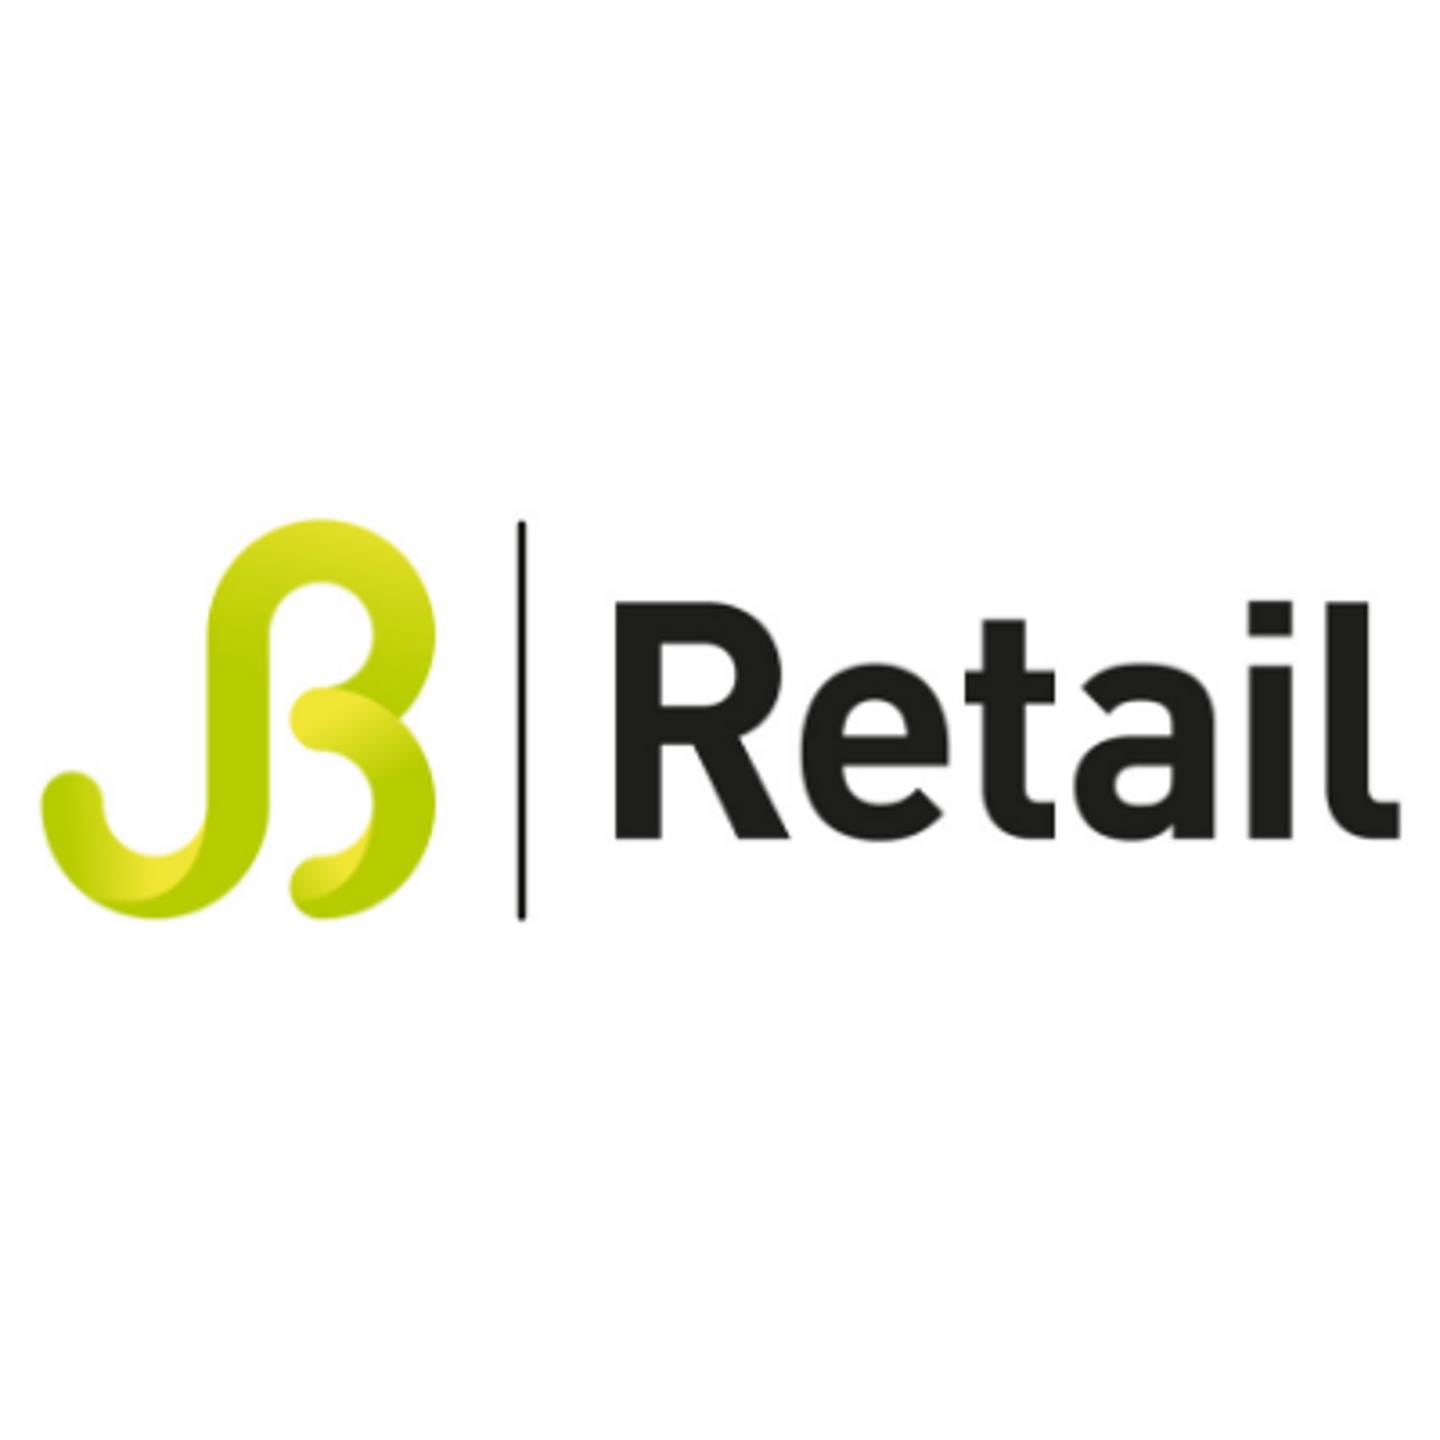 JB Retail